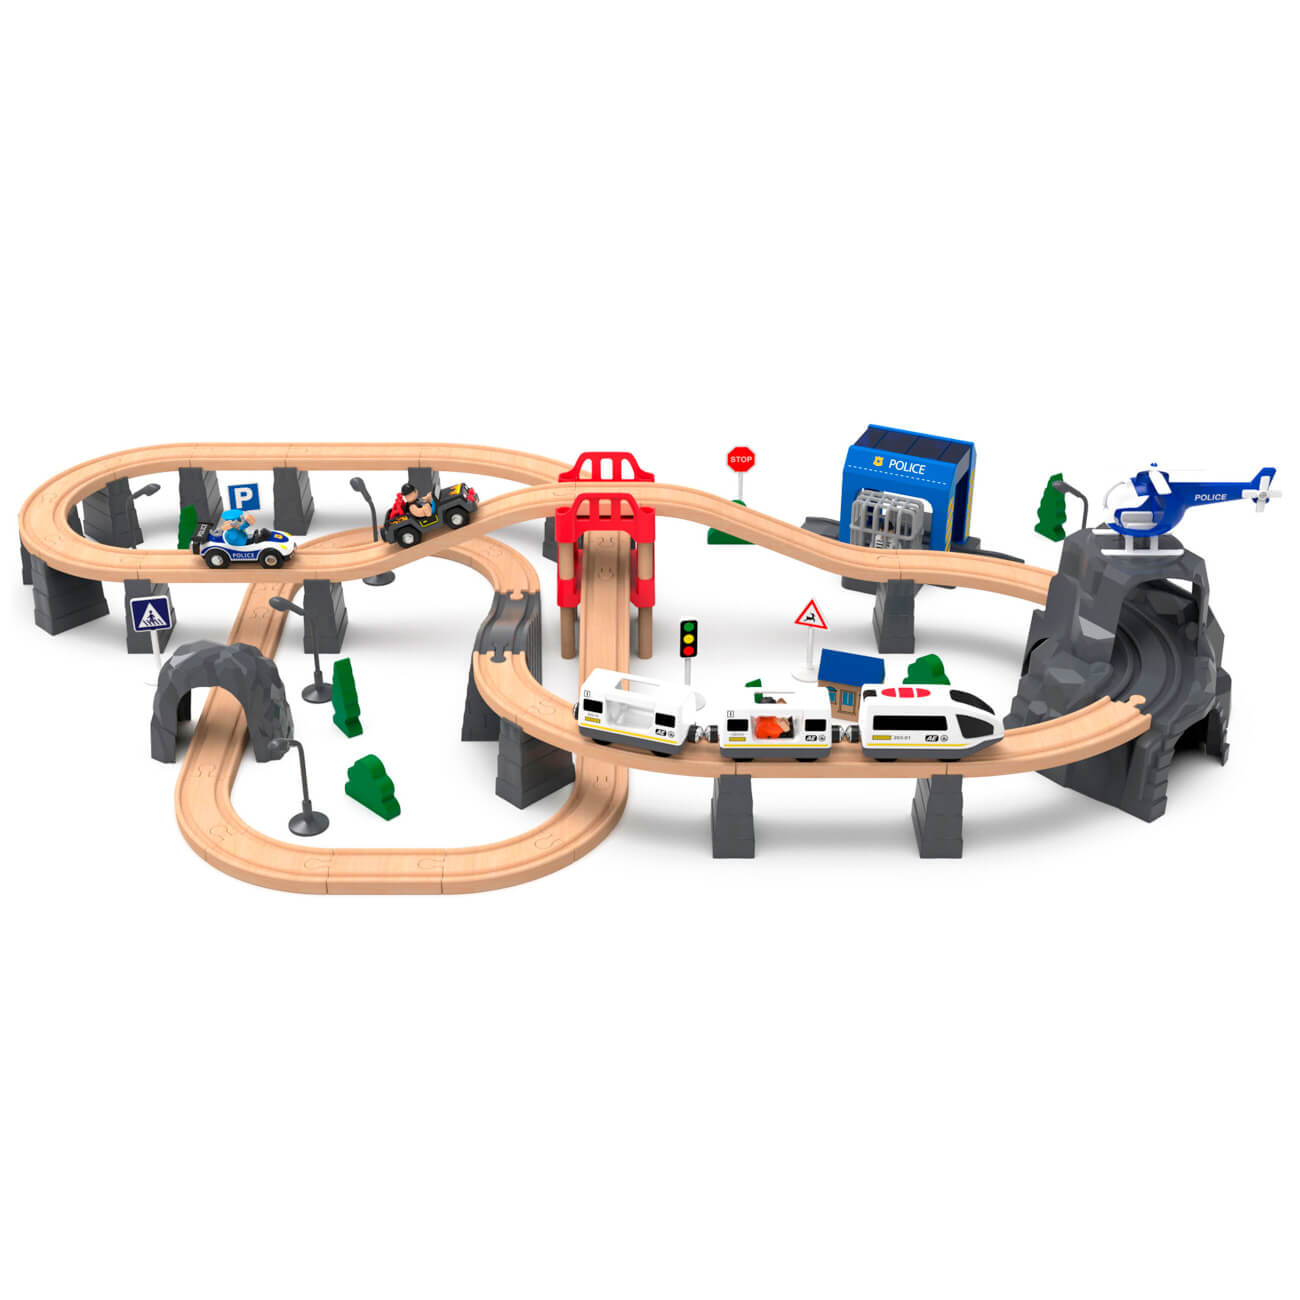 Железная дорога игрушечная, 98 см, дерево/пластик, Электропоезд, Game rail